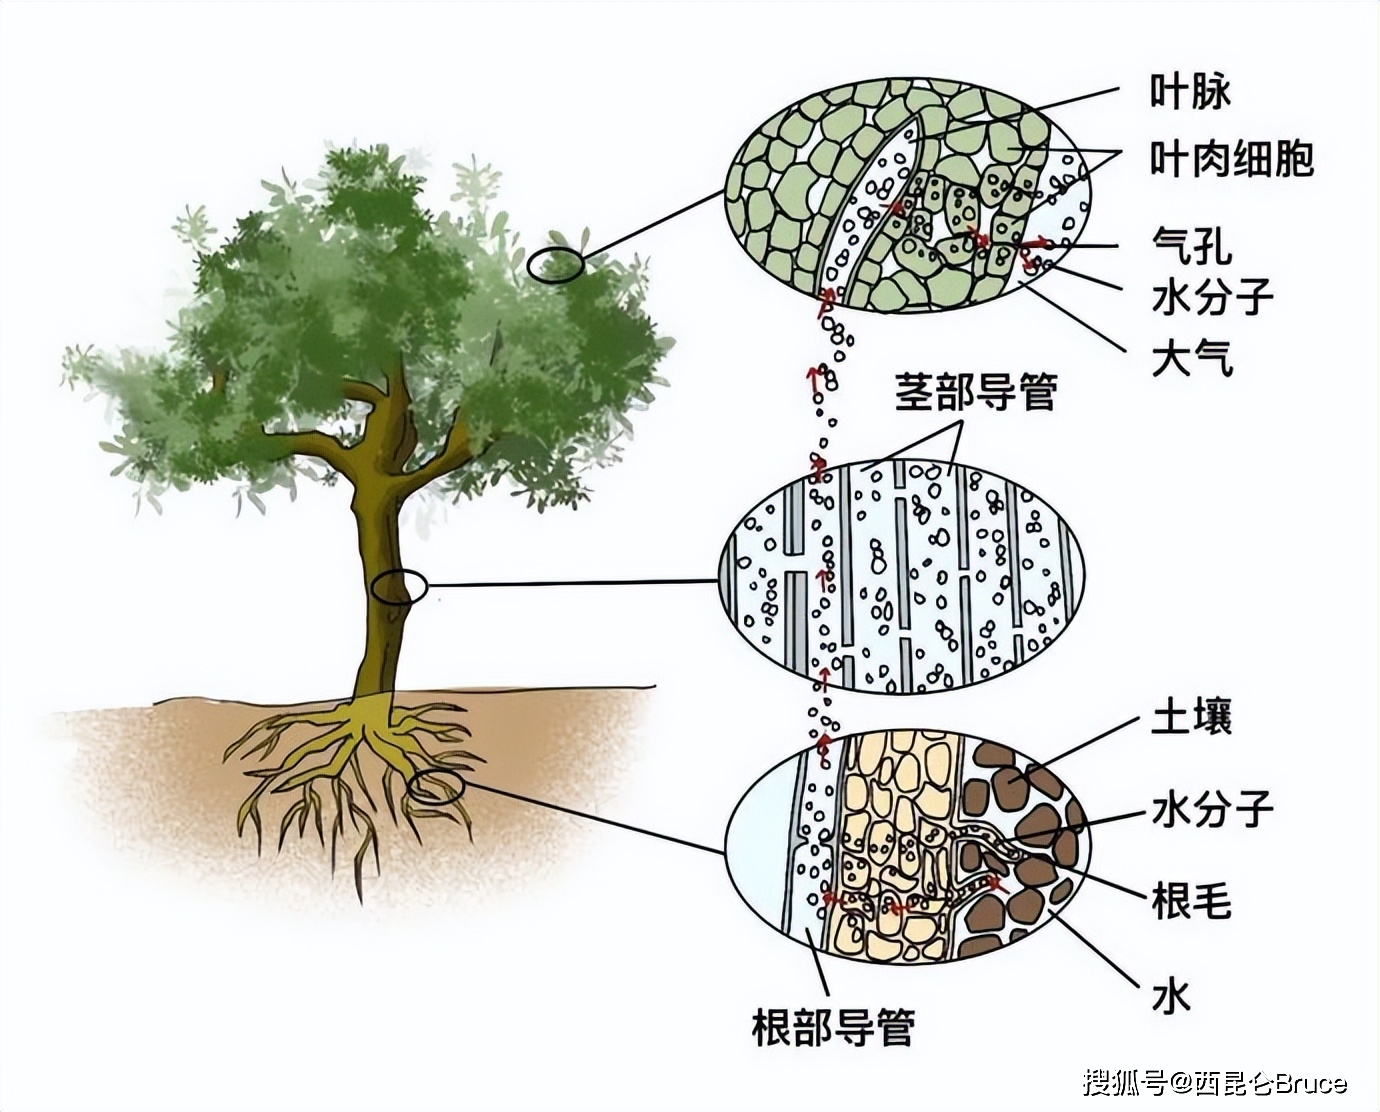 我们知道树木的养分全靠来自根系从地下获得,而木质部中有输导组织